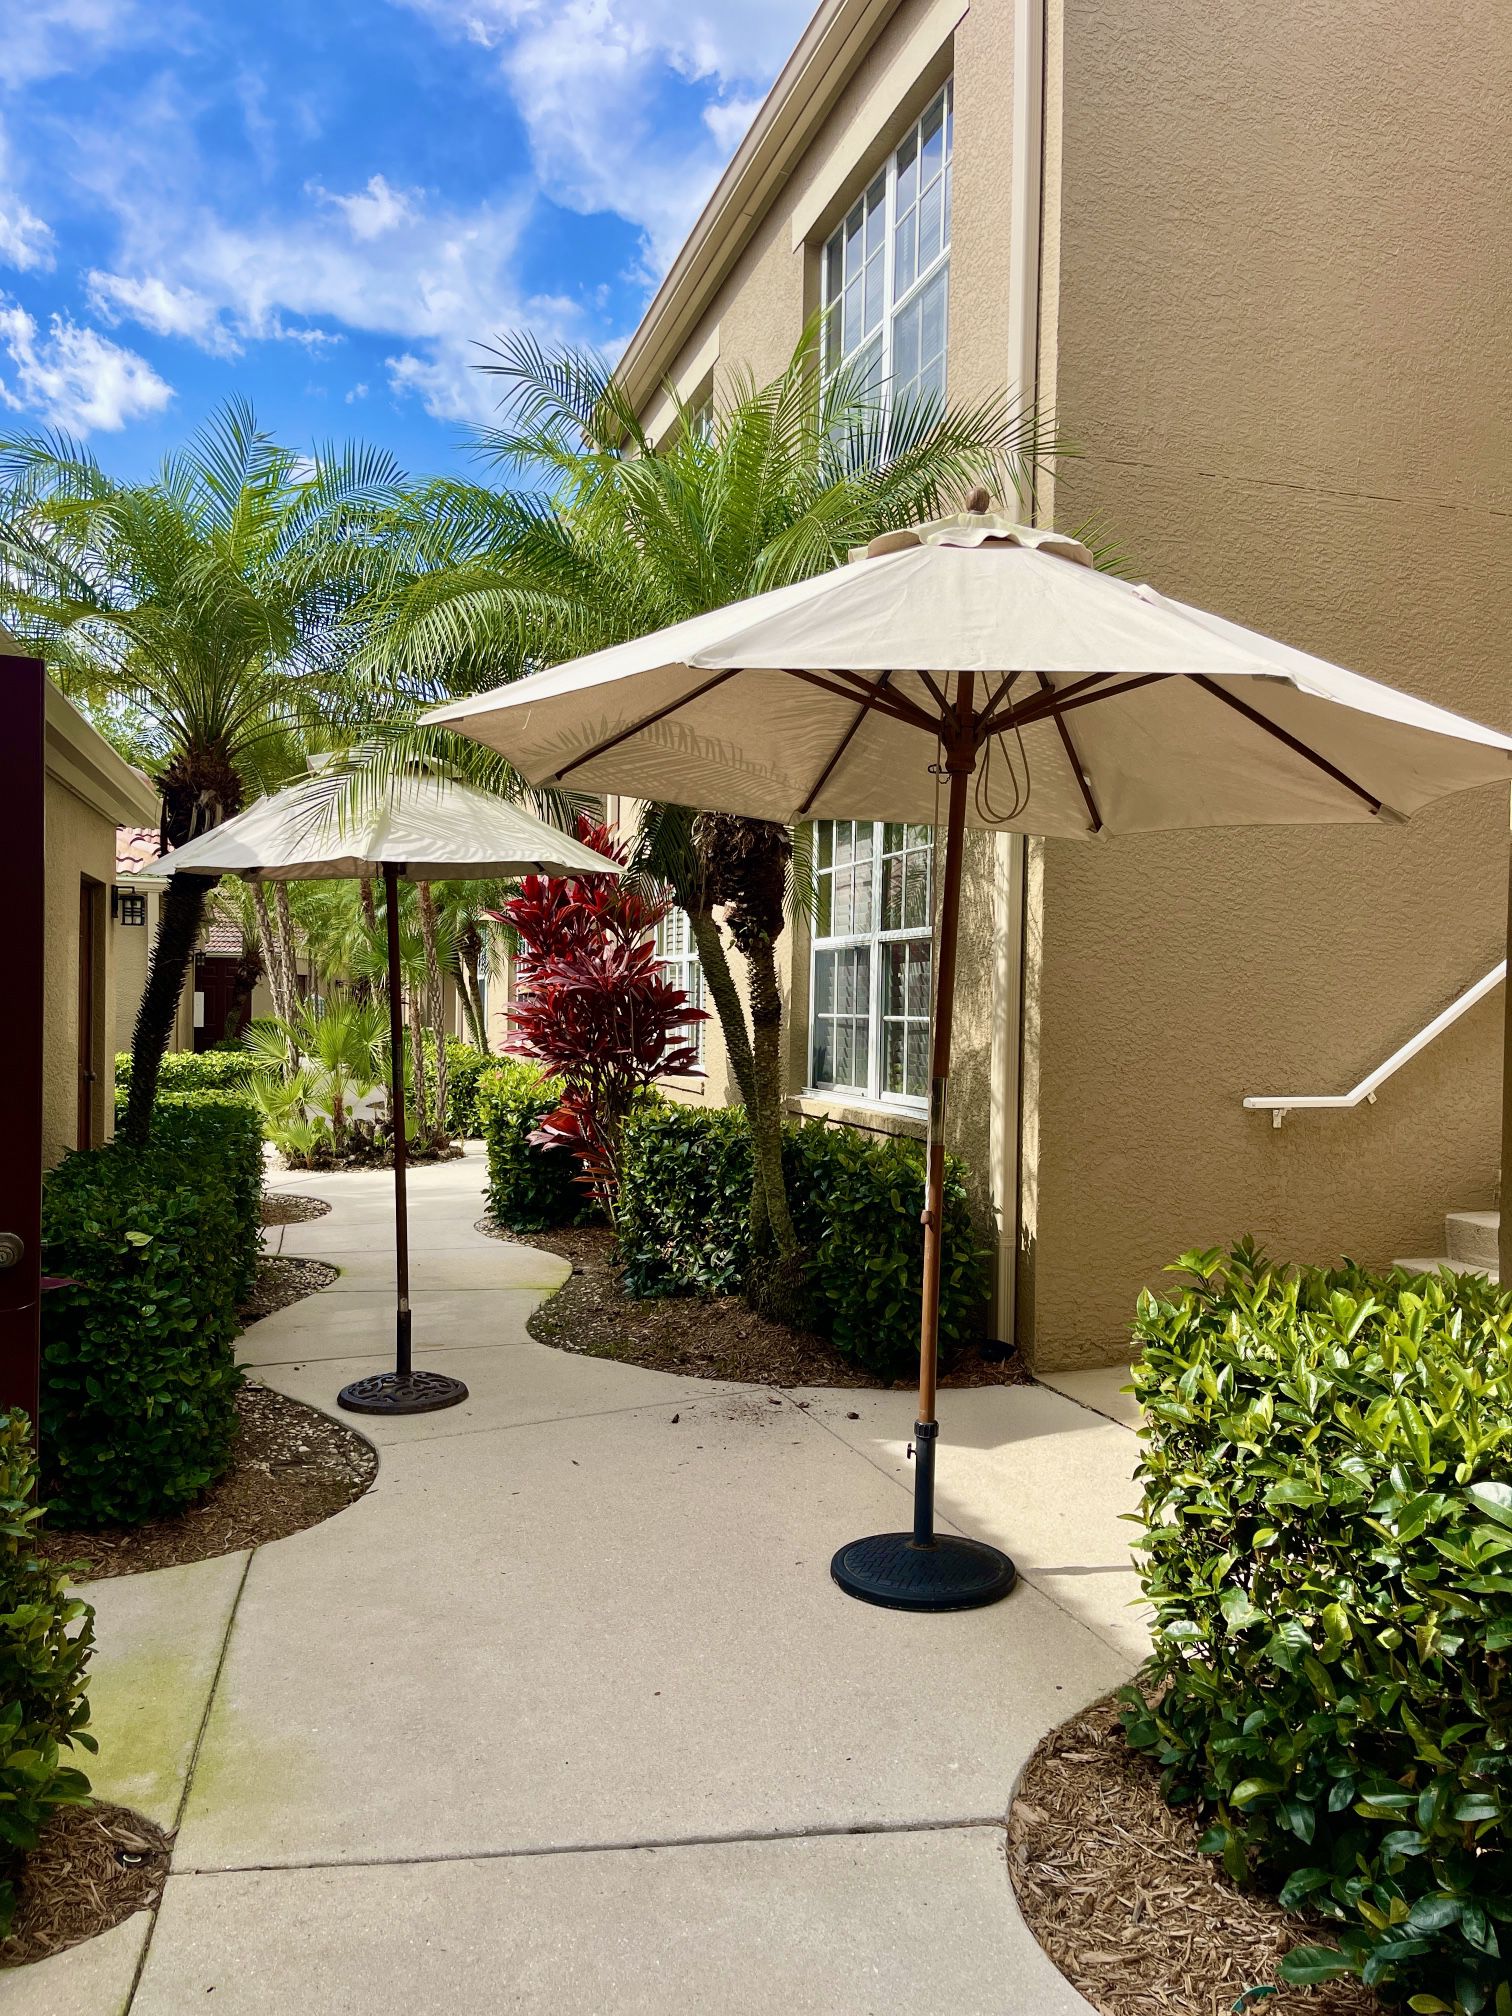 Beautiful 10” and 6” Pottery Barn Rectangular Outdoor Patio Umbrella – Teak Frame - set of 2